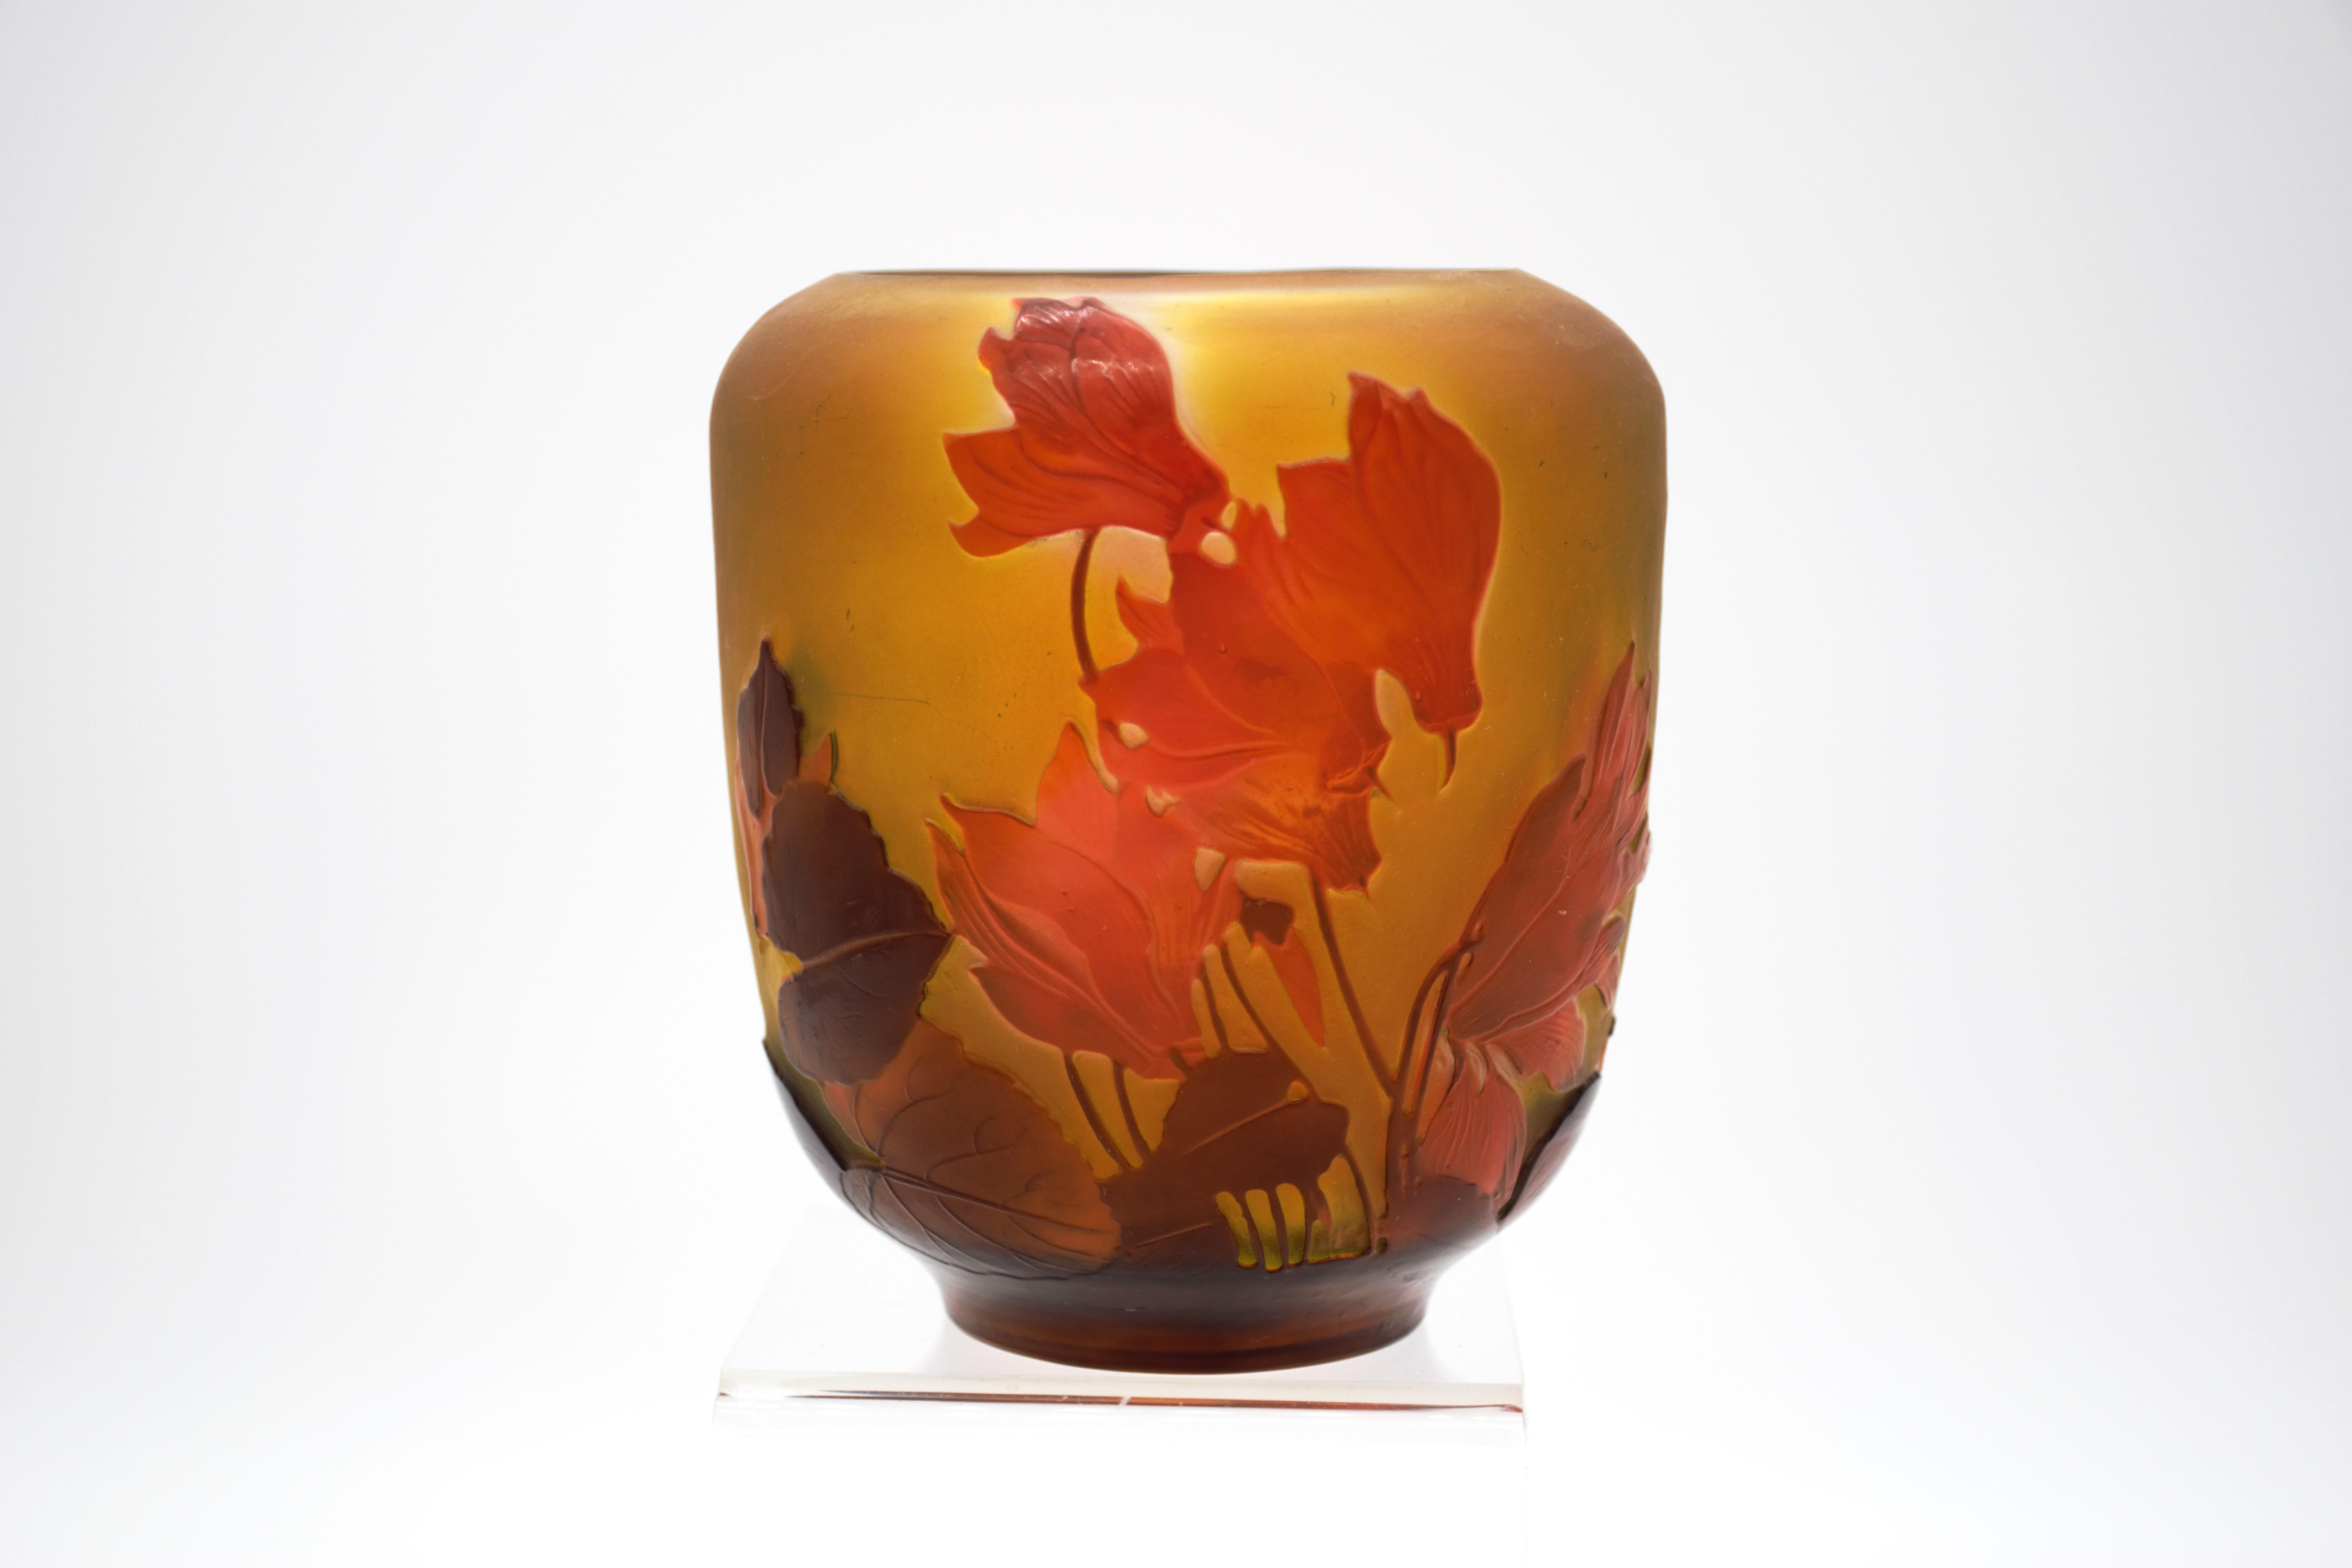 Un joli vase en verre camée de la fin du 19e siècle, de forme basse mais large, taillé avec des fleurs de cyclamen rouges décoratives sur un fond jaune chaud, avec d'excellents détails et couleurs finis à la main, signé Gallé en camée, ce vase est